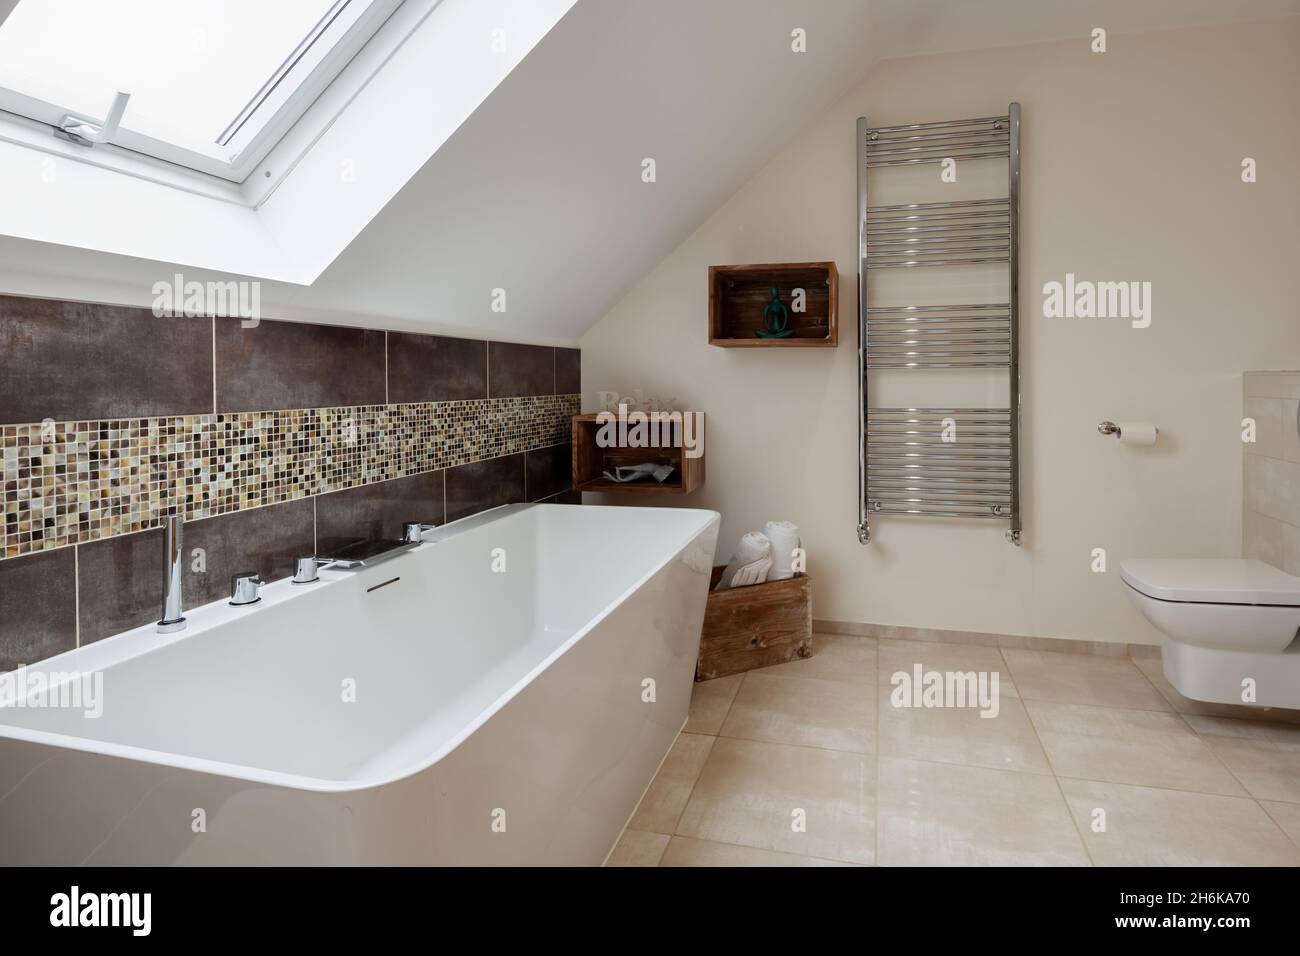 Essex, Angleterre - novembre 18 2019: Belle salle de bains moderne partiellement carrelée avec porte-serviettes et étagère murale Banque D'Images